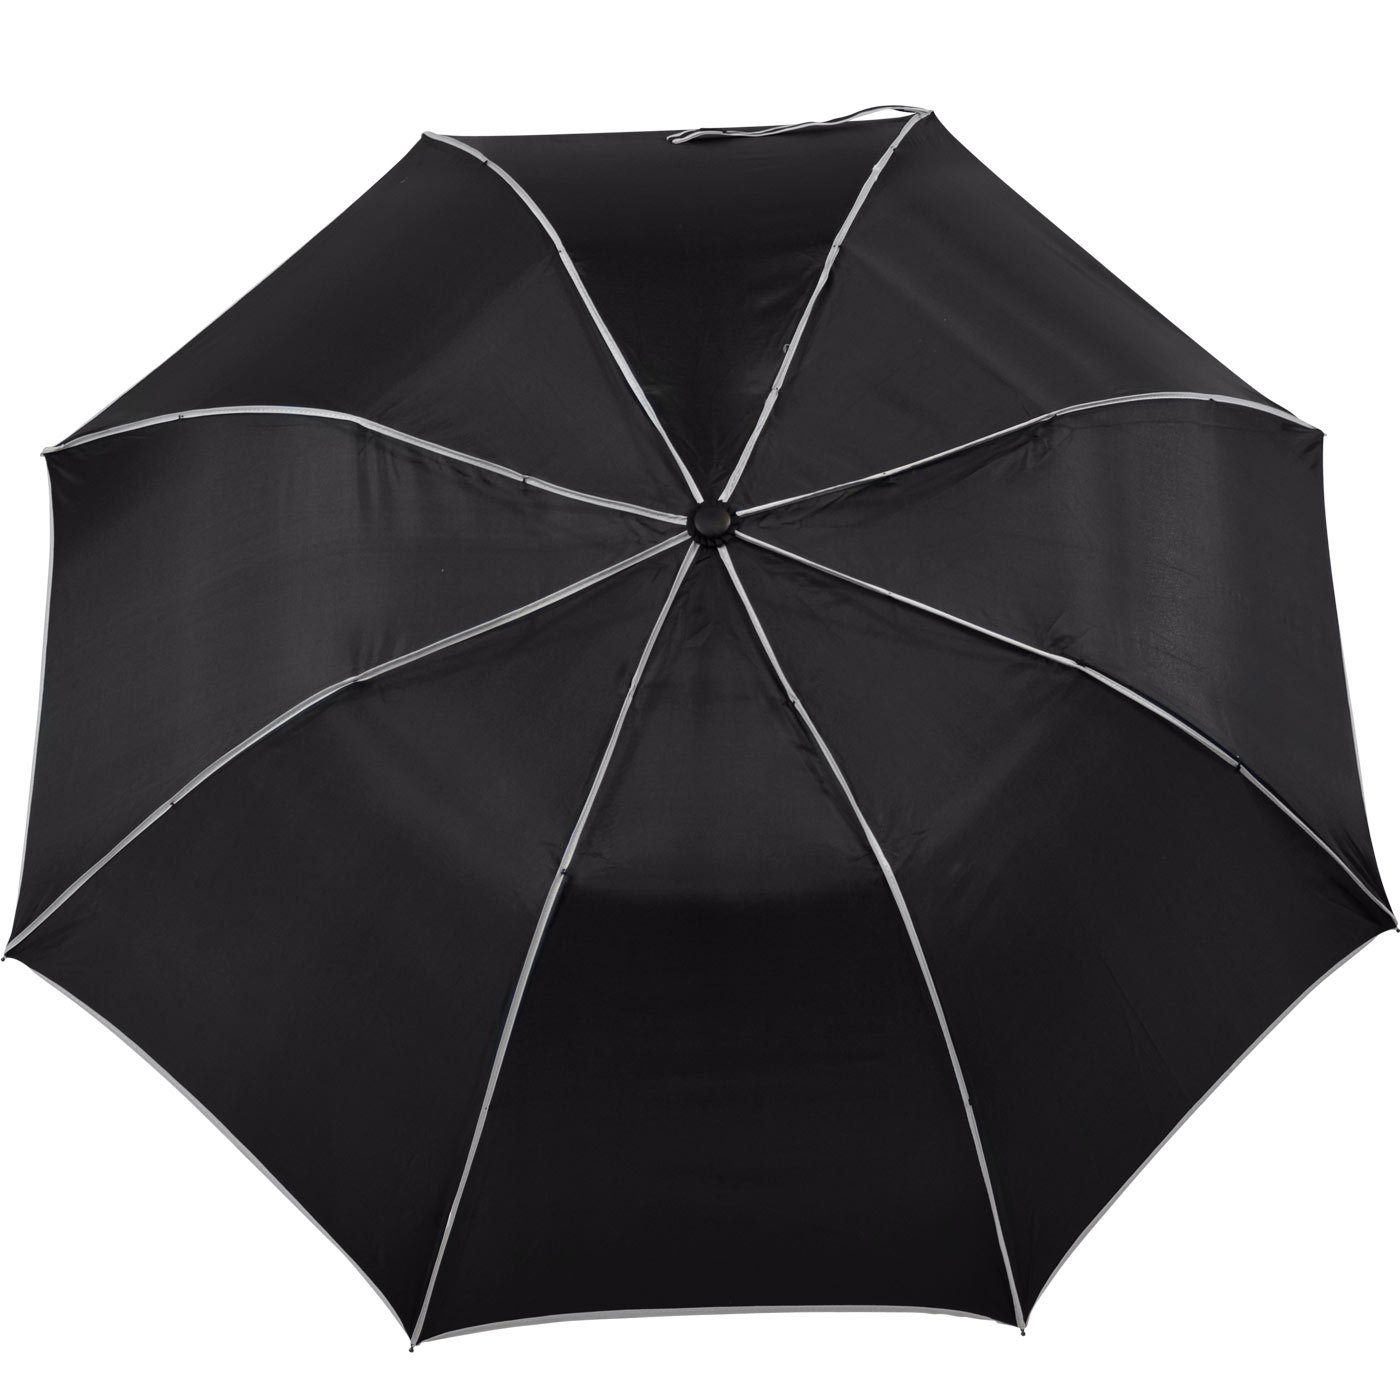 Impliva Taschenregenschirm Falconetti Auf-Automatik farblich schwarz-weiß auffallend Griff, passender